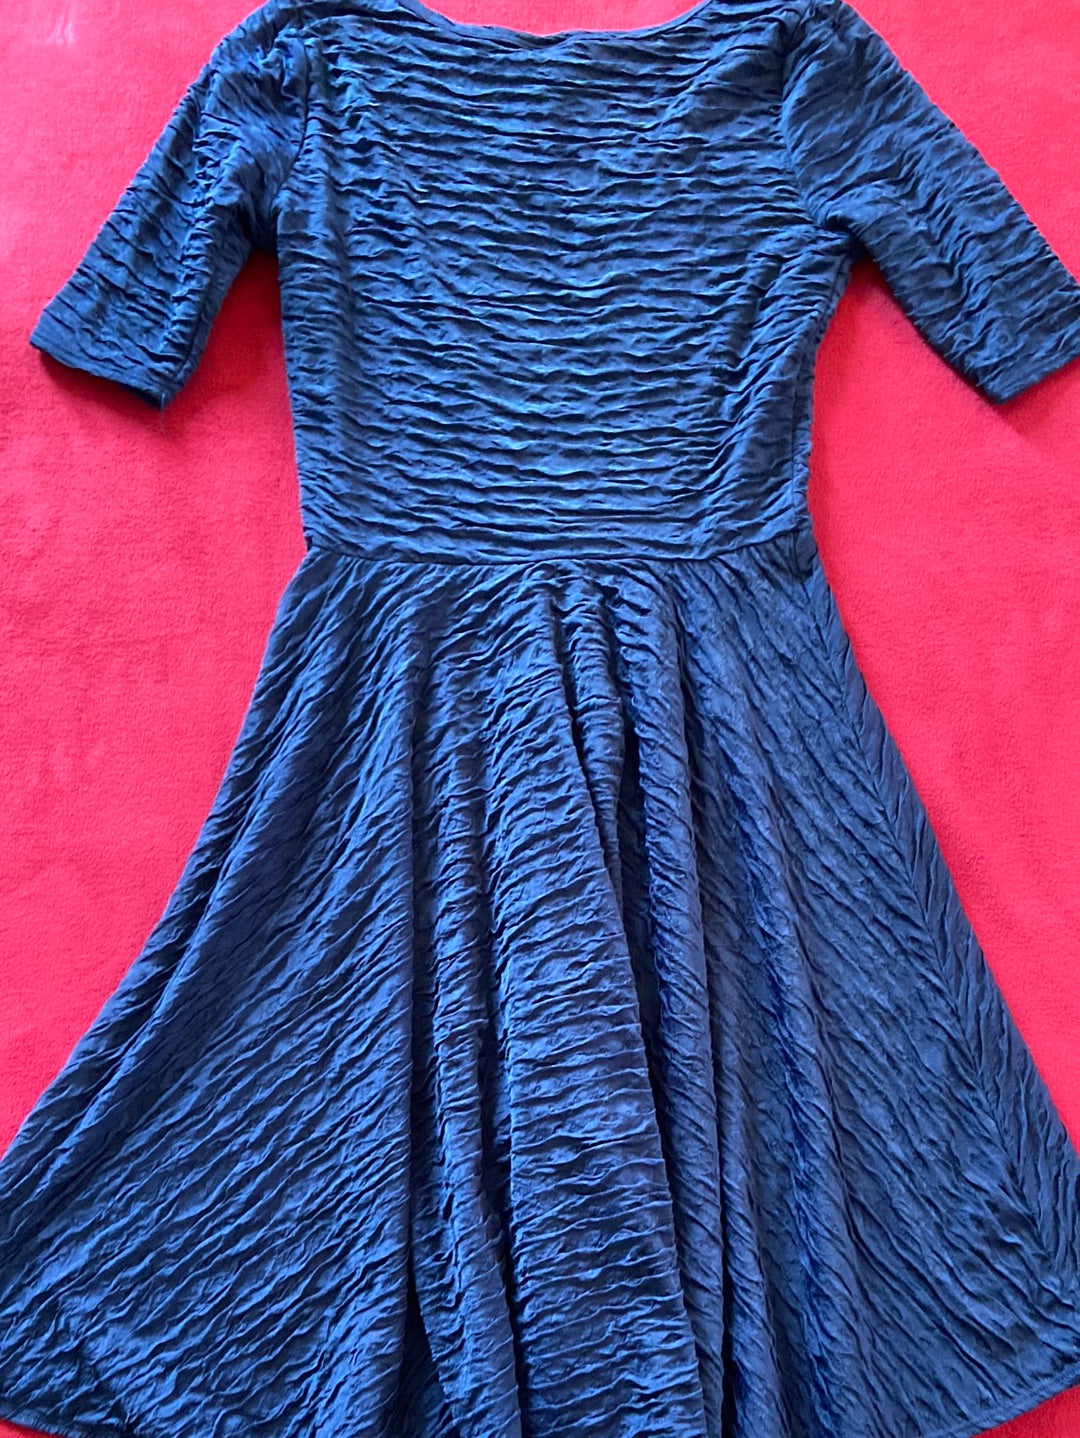 BLUE BASIC LuLaRoe Navy Dress Size M